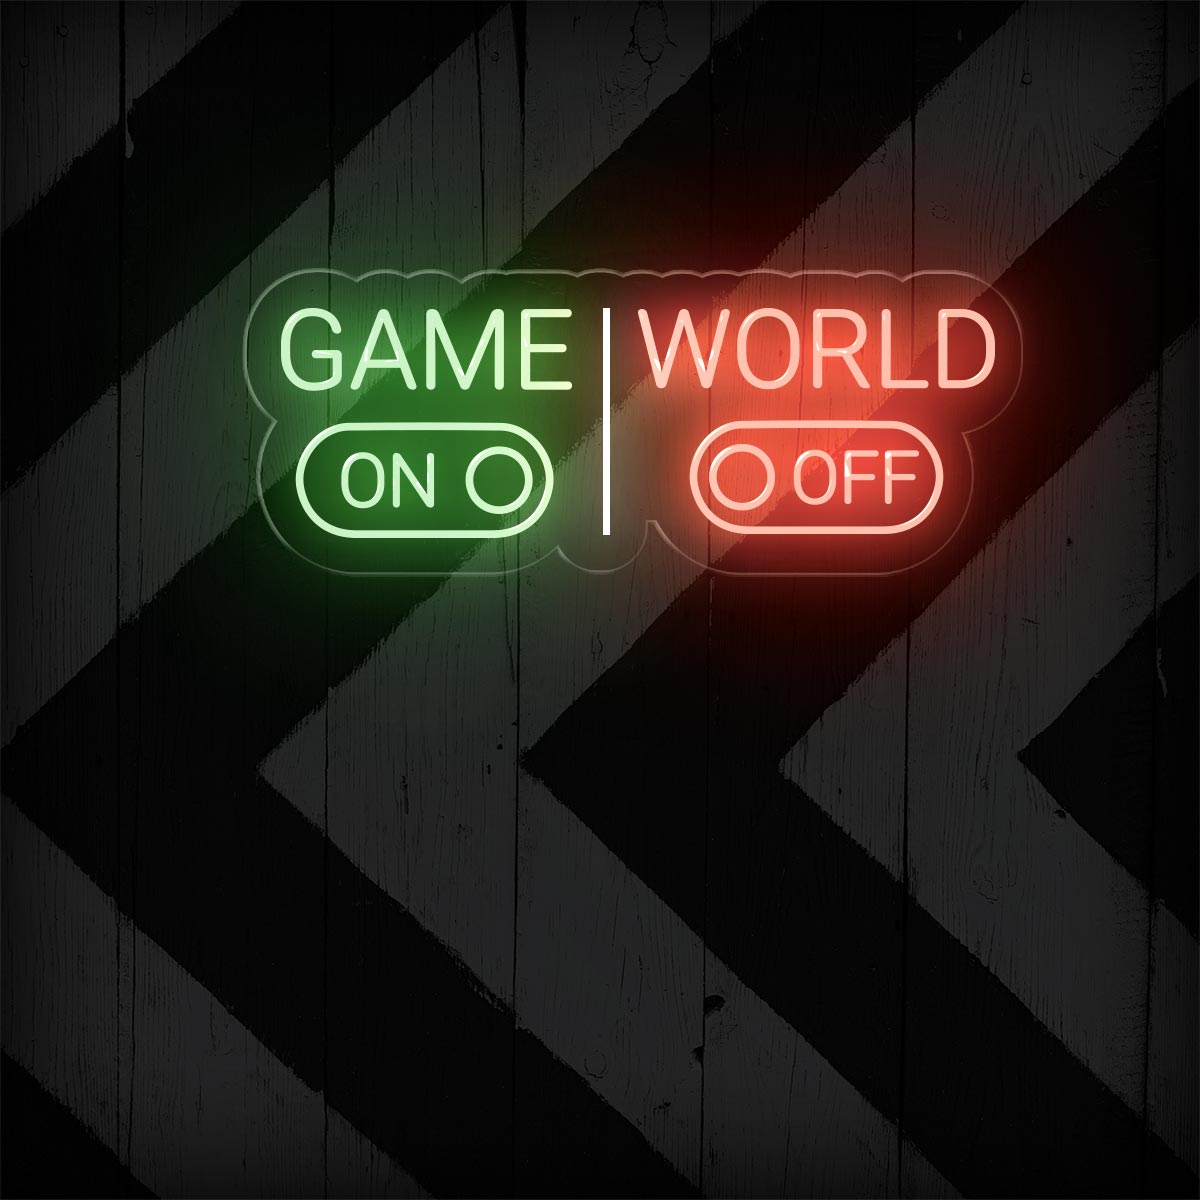 Game On World Off – Game Room Led Light Decor - NEONXPERT